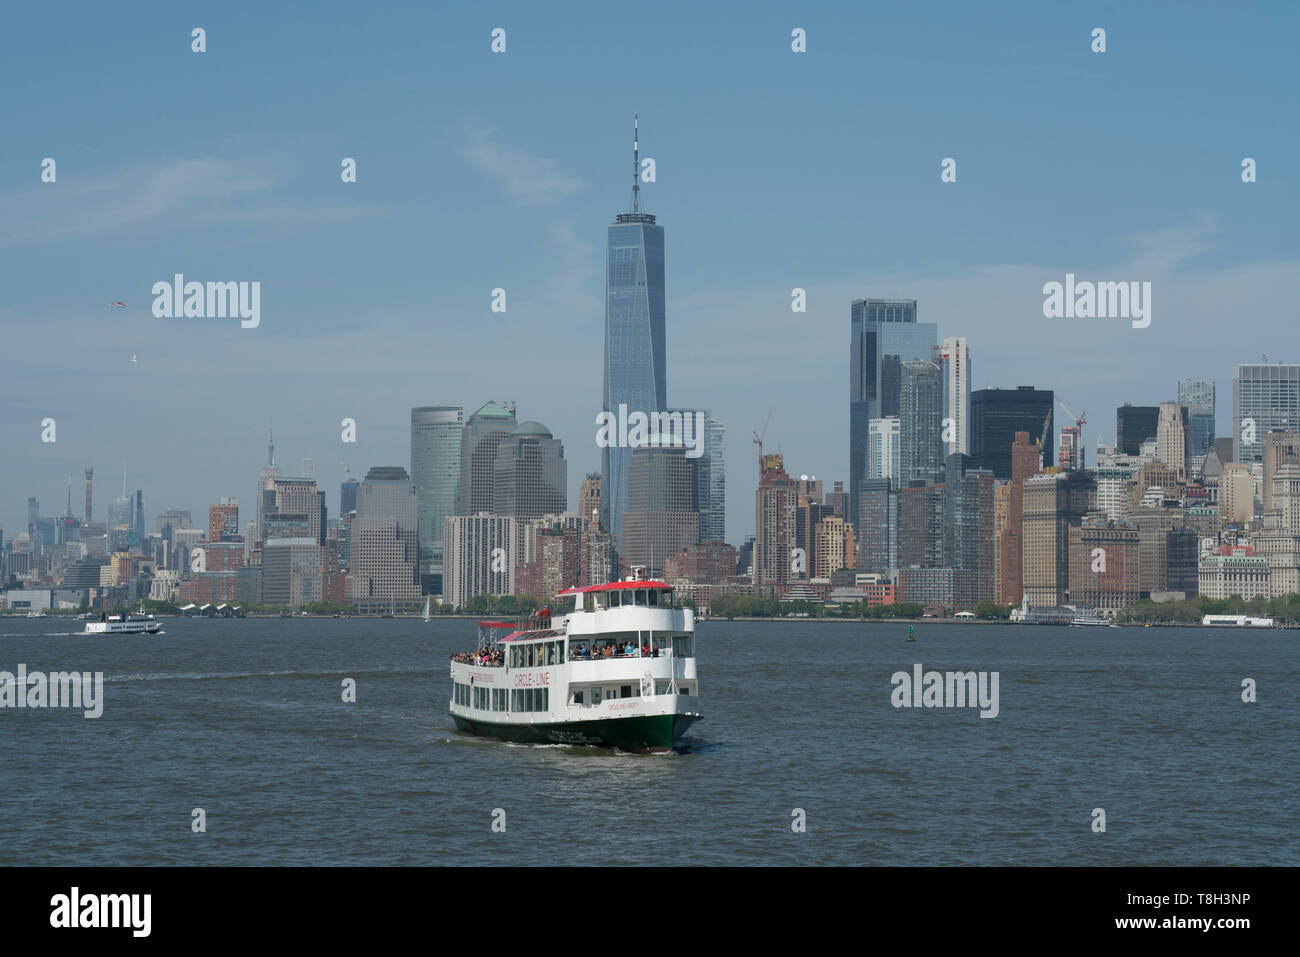 Lo skyline di Manhattan con la Circle Line sightseeing boat tenendo i turisti intorno al porto di New York. Maggio 8, 2019 Foto Stock